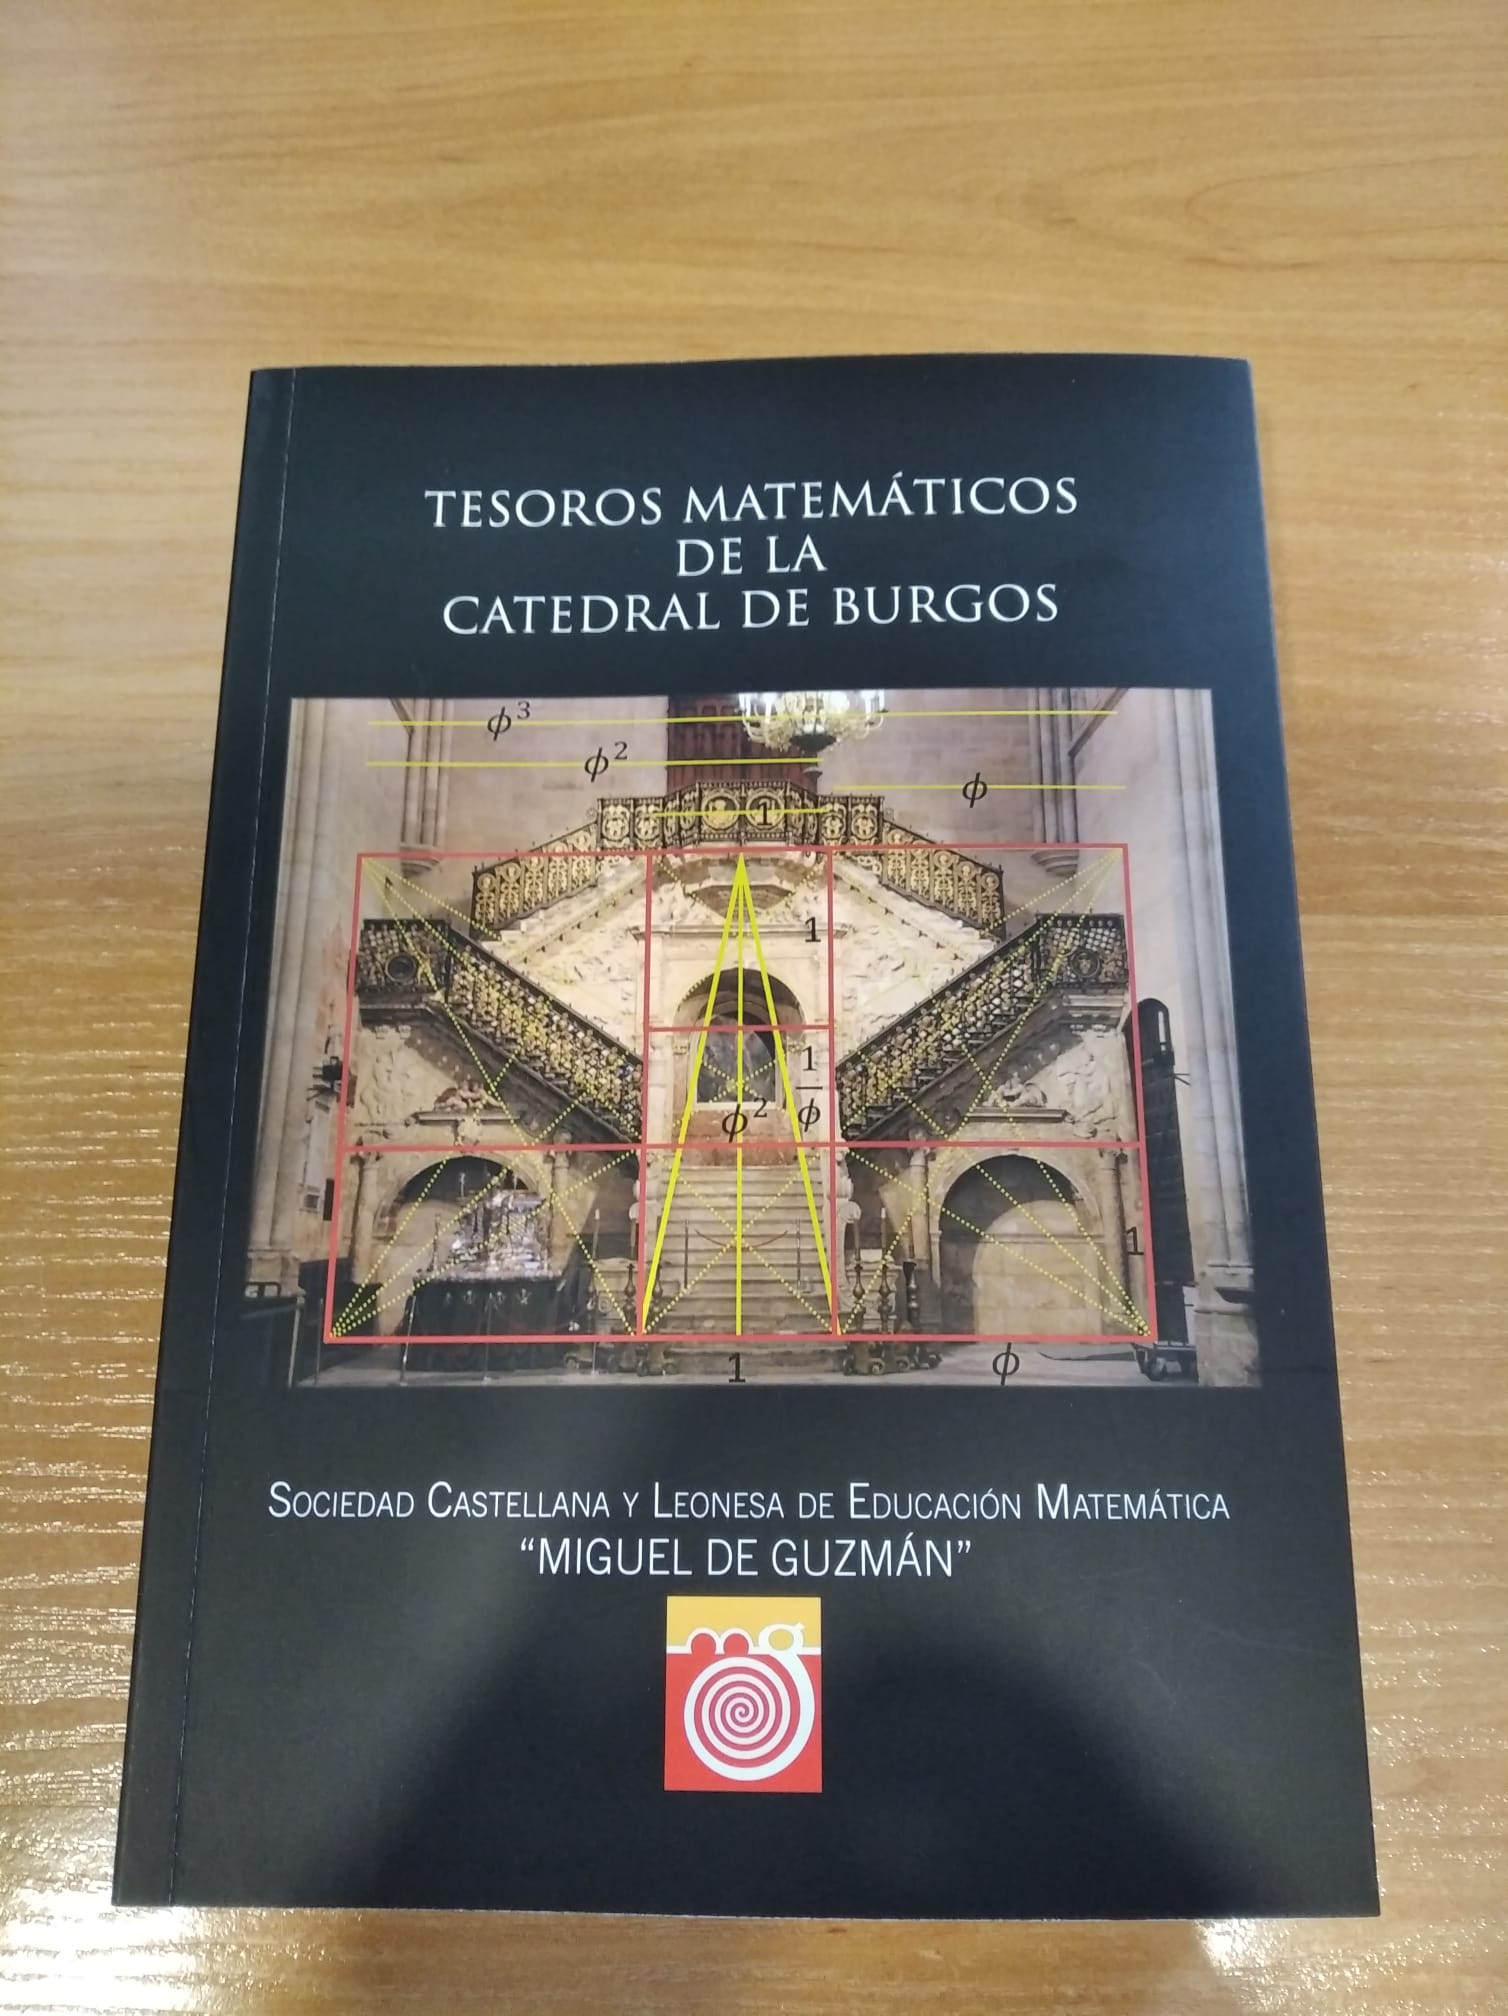 Imagen de portada del libro Tesoros matemáticos de la catedral de Burgos